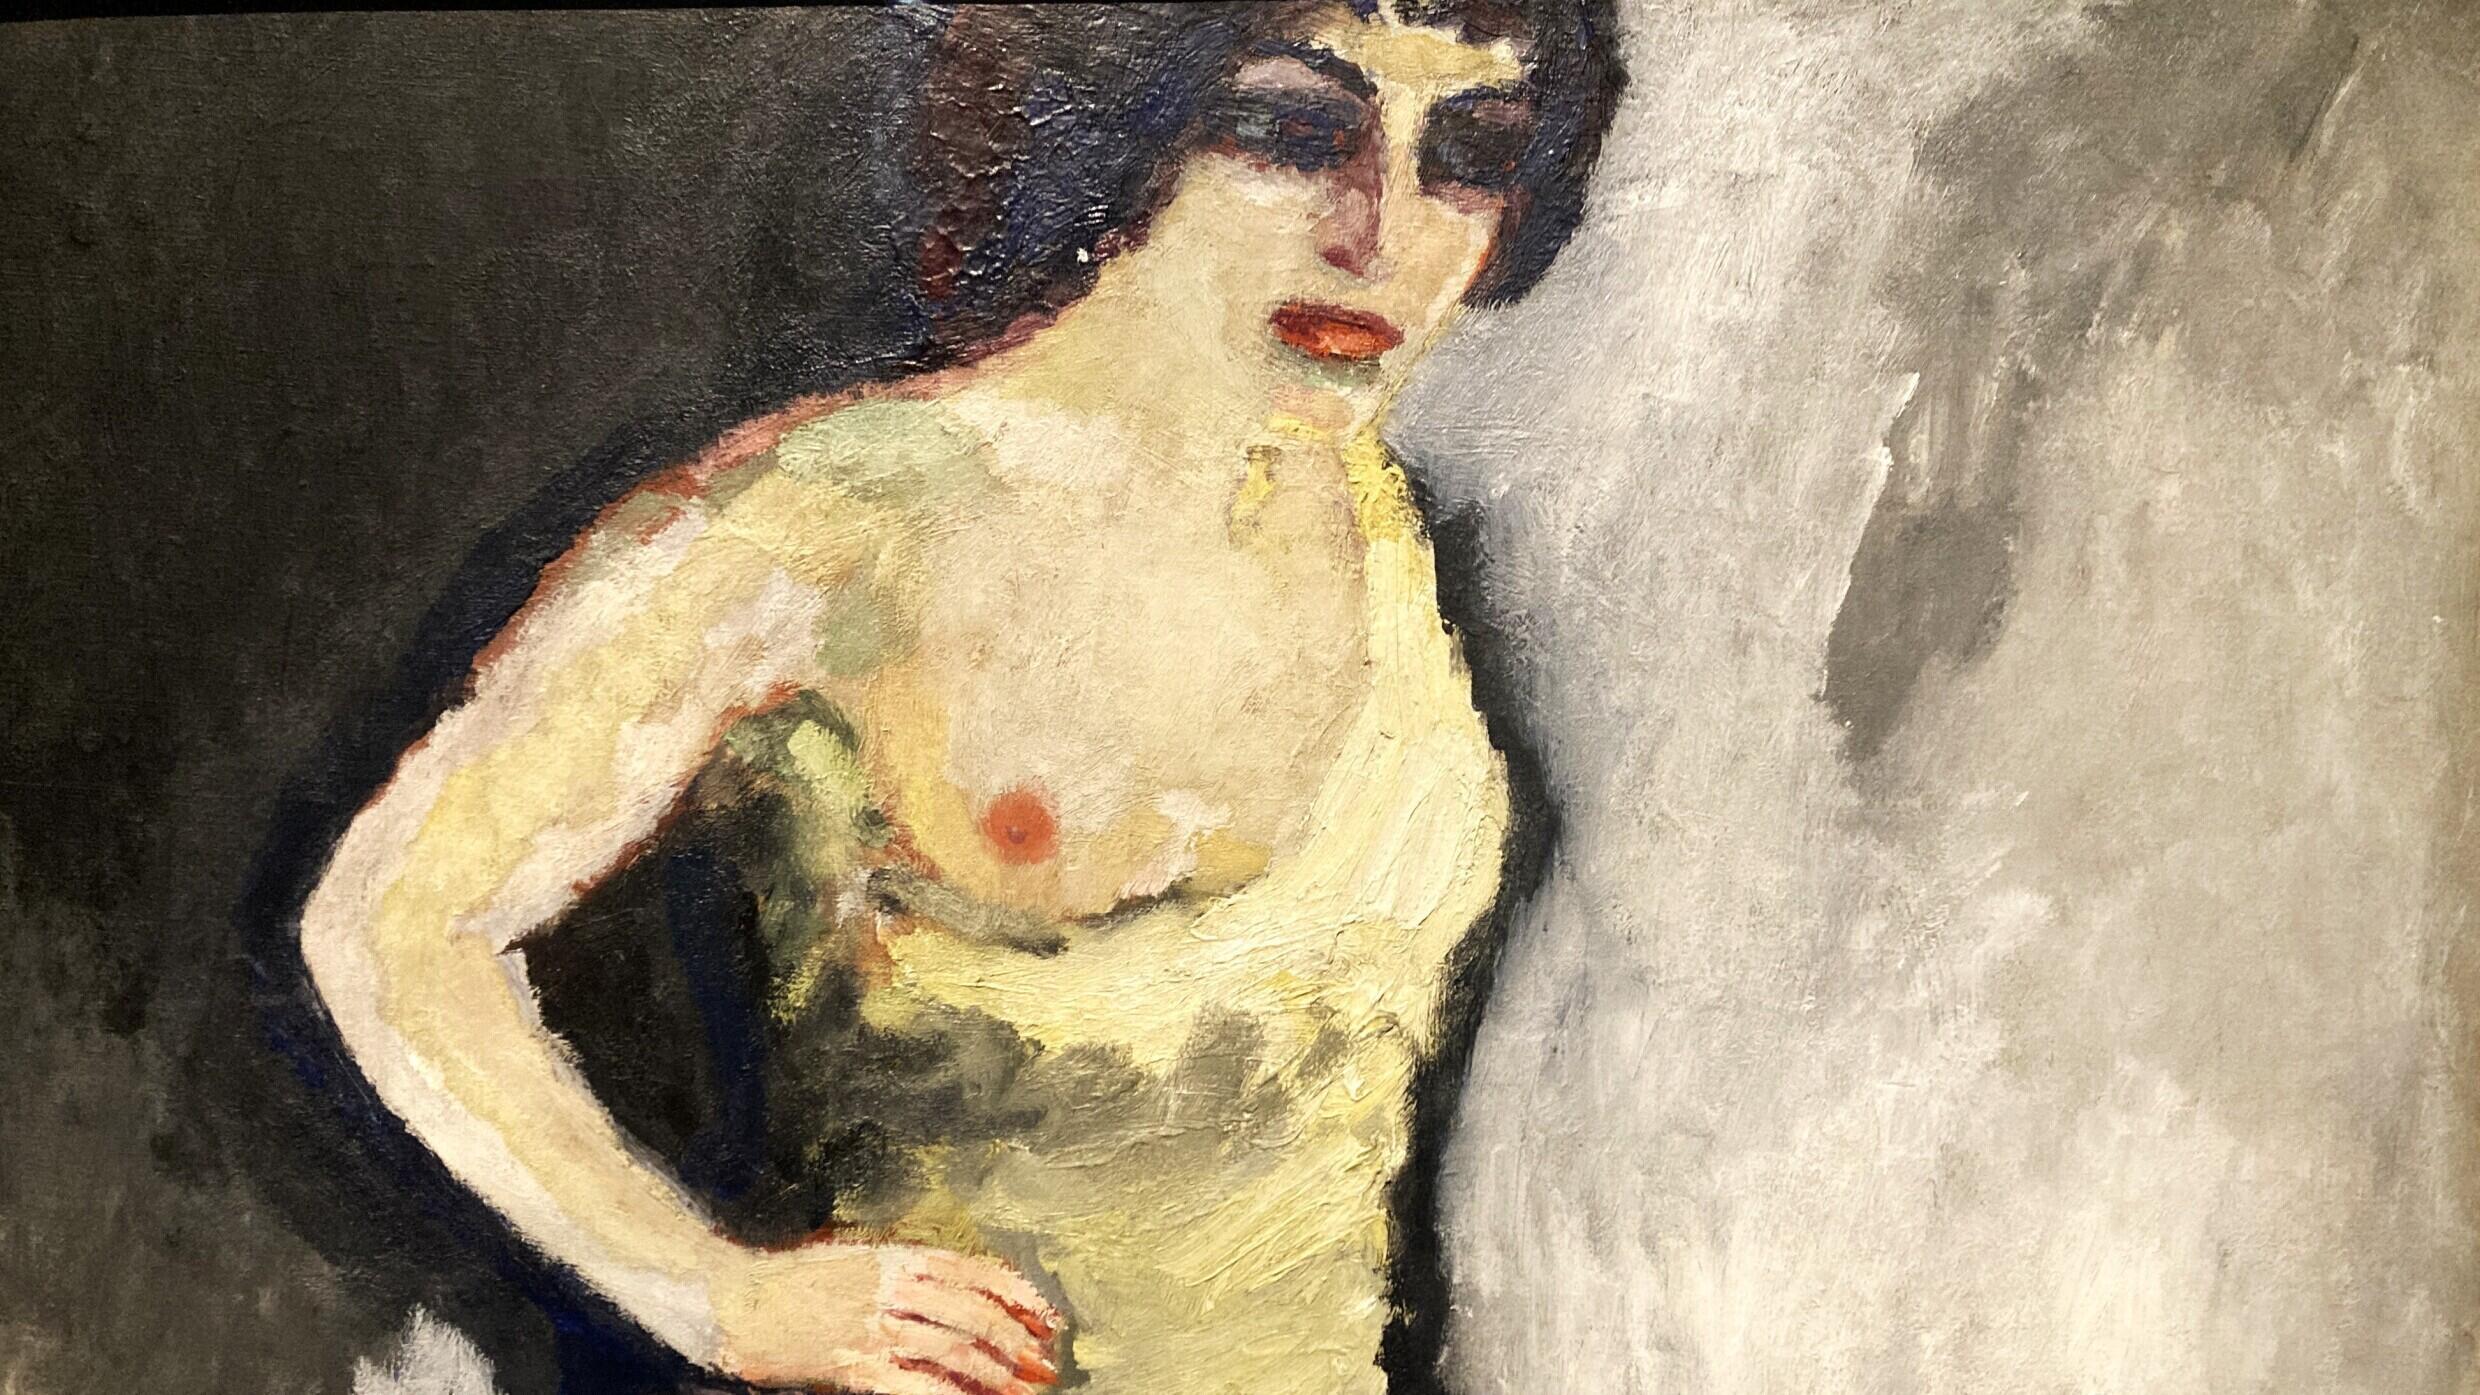 Vue sur un détail de « Nini, danseuse aux Folies-Bergères ou La Saltimbanque au sein nu » (1907/08) de Kees Van Dongen dans l’exposition « Le Paris de la modernité ».